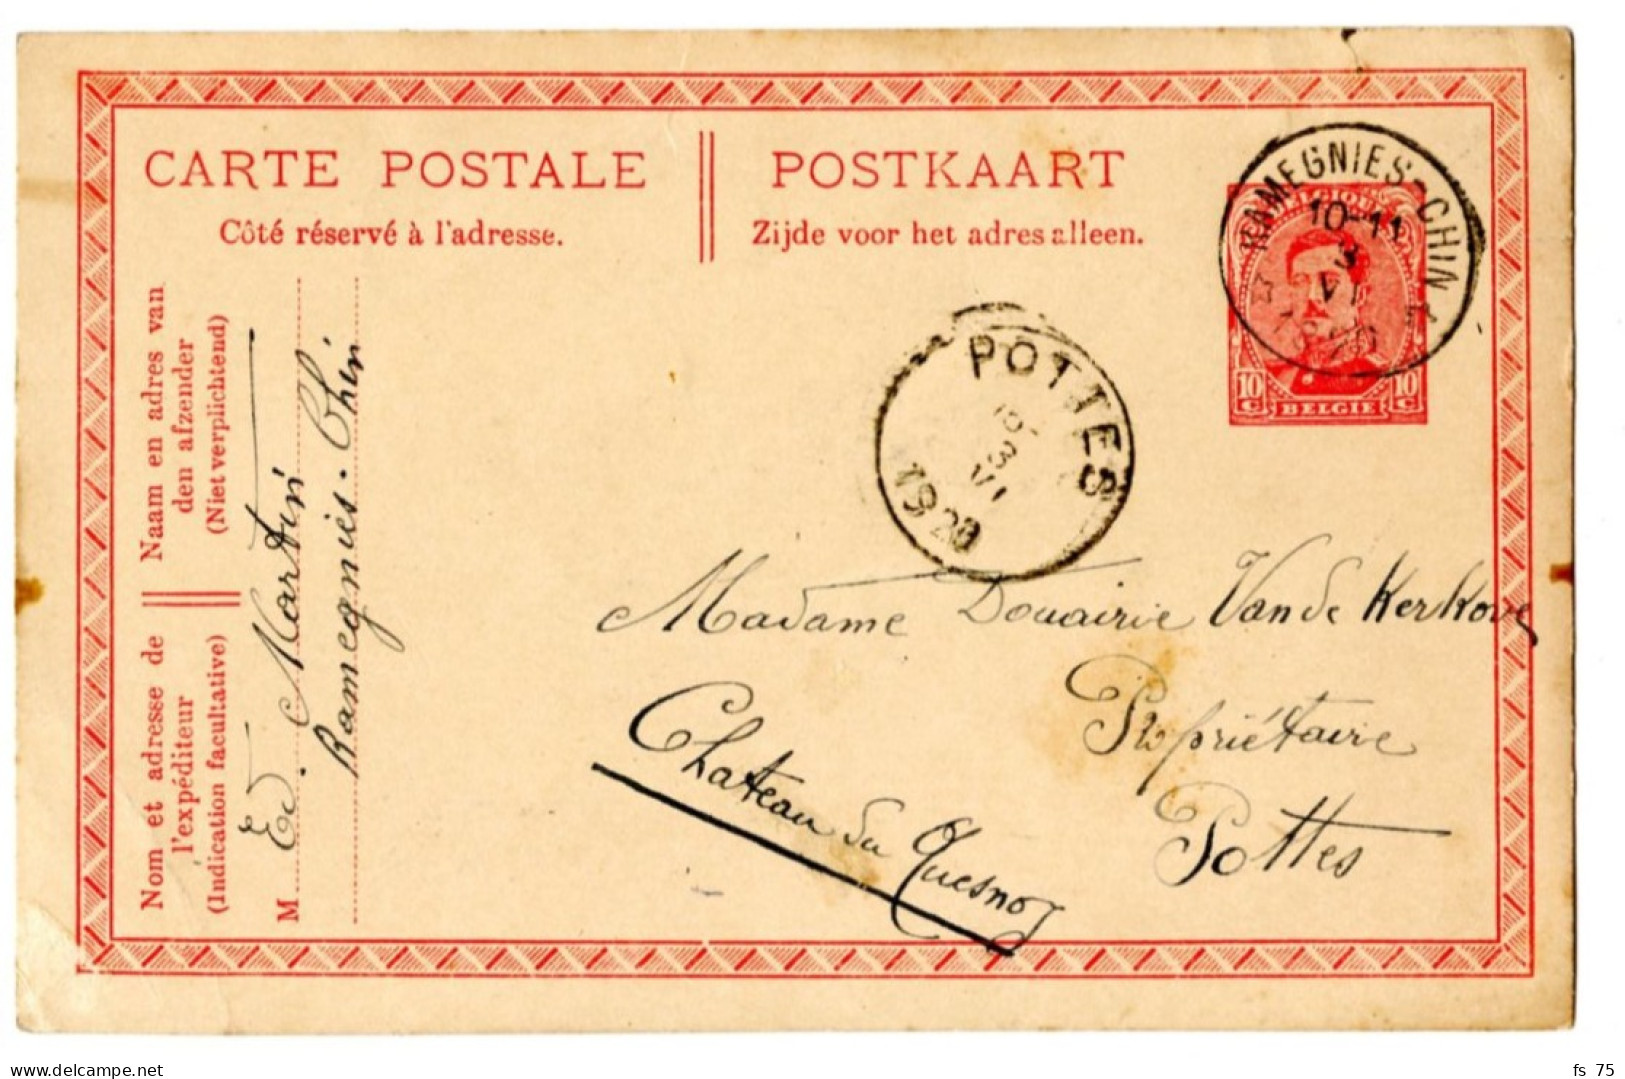 BELGIQUE - SIMPLE CERCLE RELAIS A ETOILES RAMEGNIES-CHIN SUR ENTIER CARTE POSTALE 10C ALBERT 1ER, 1920 - Postmarks With Stars